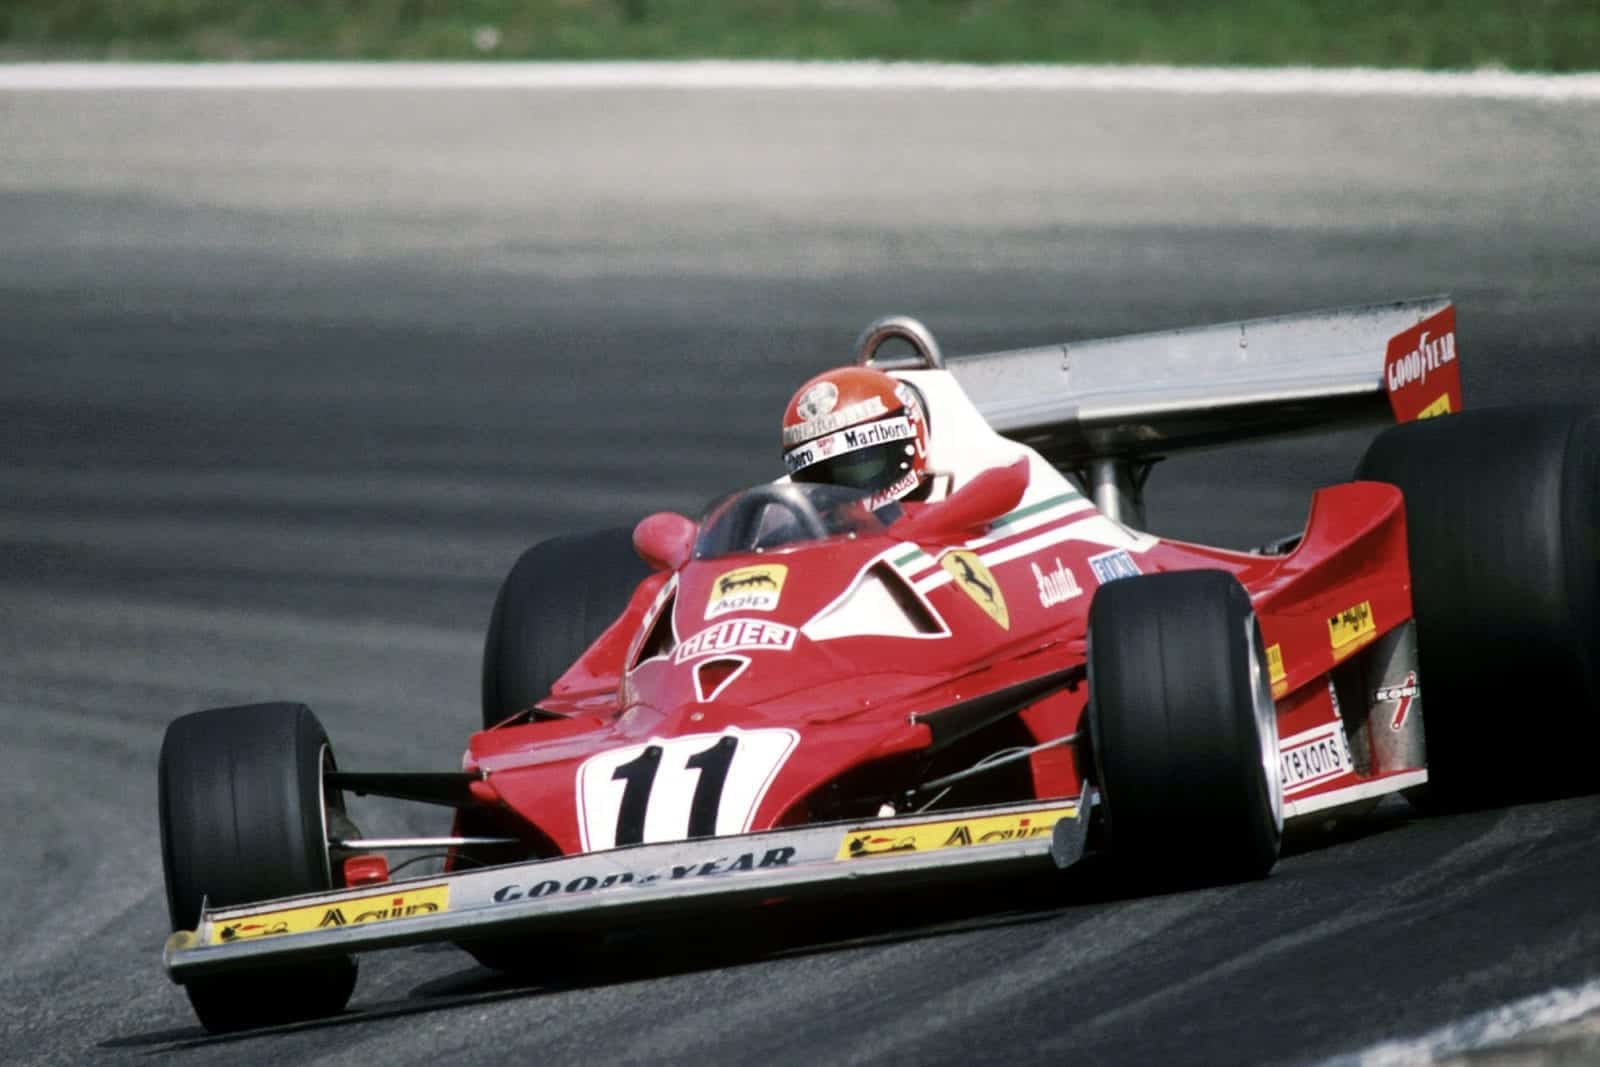 Niki Lauda (Ferrari) driving at the 1977 Dutch Grand Prix, Zandvoort.